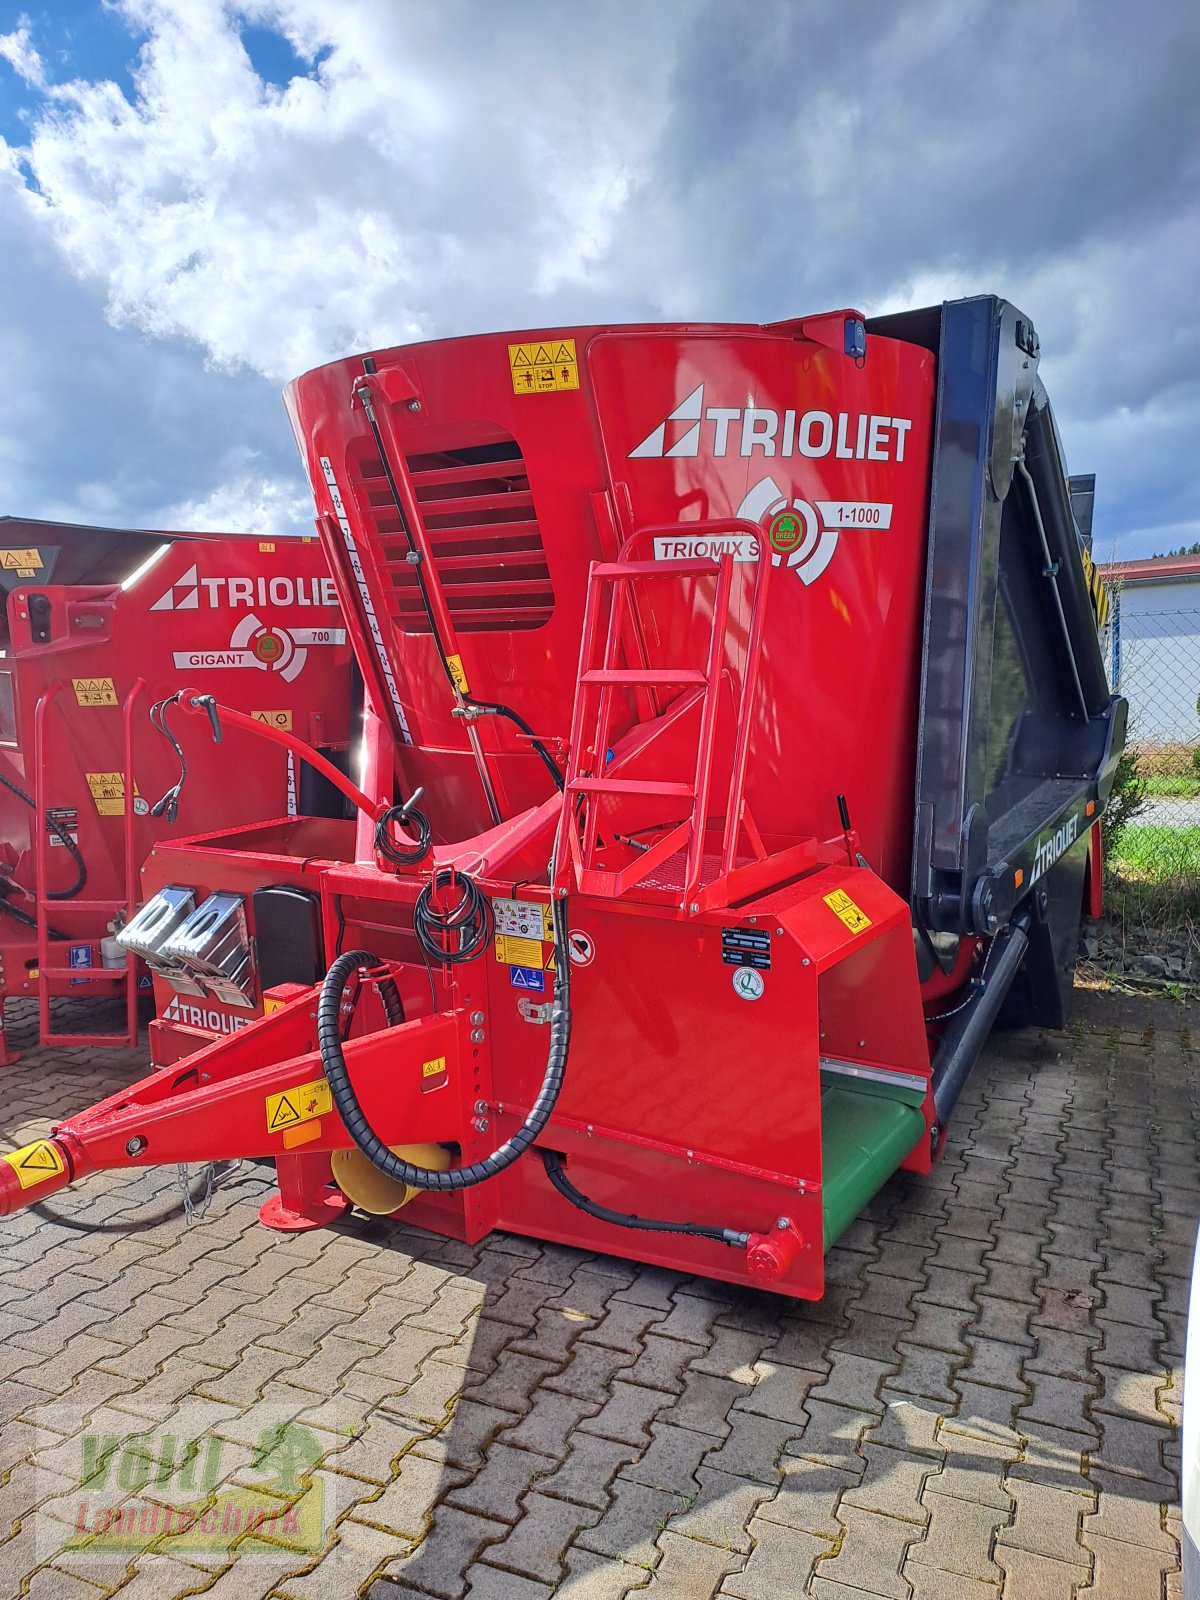 Futtermischwagen des Typs Trioliet Triomix S1-1000, Neumaschine in Hutthurm bei Passau (Bild 2)